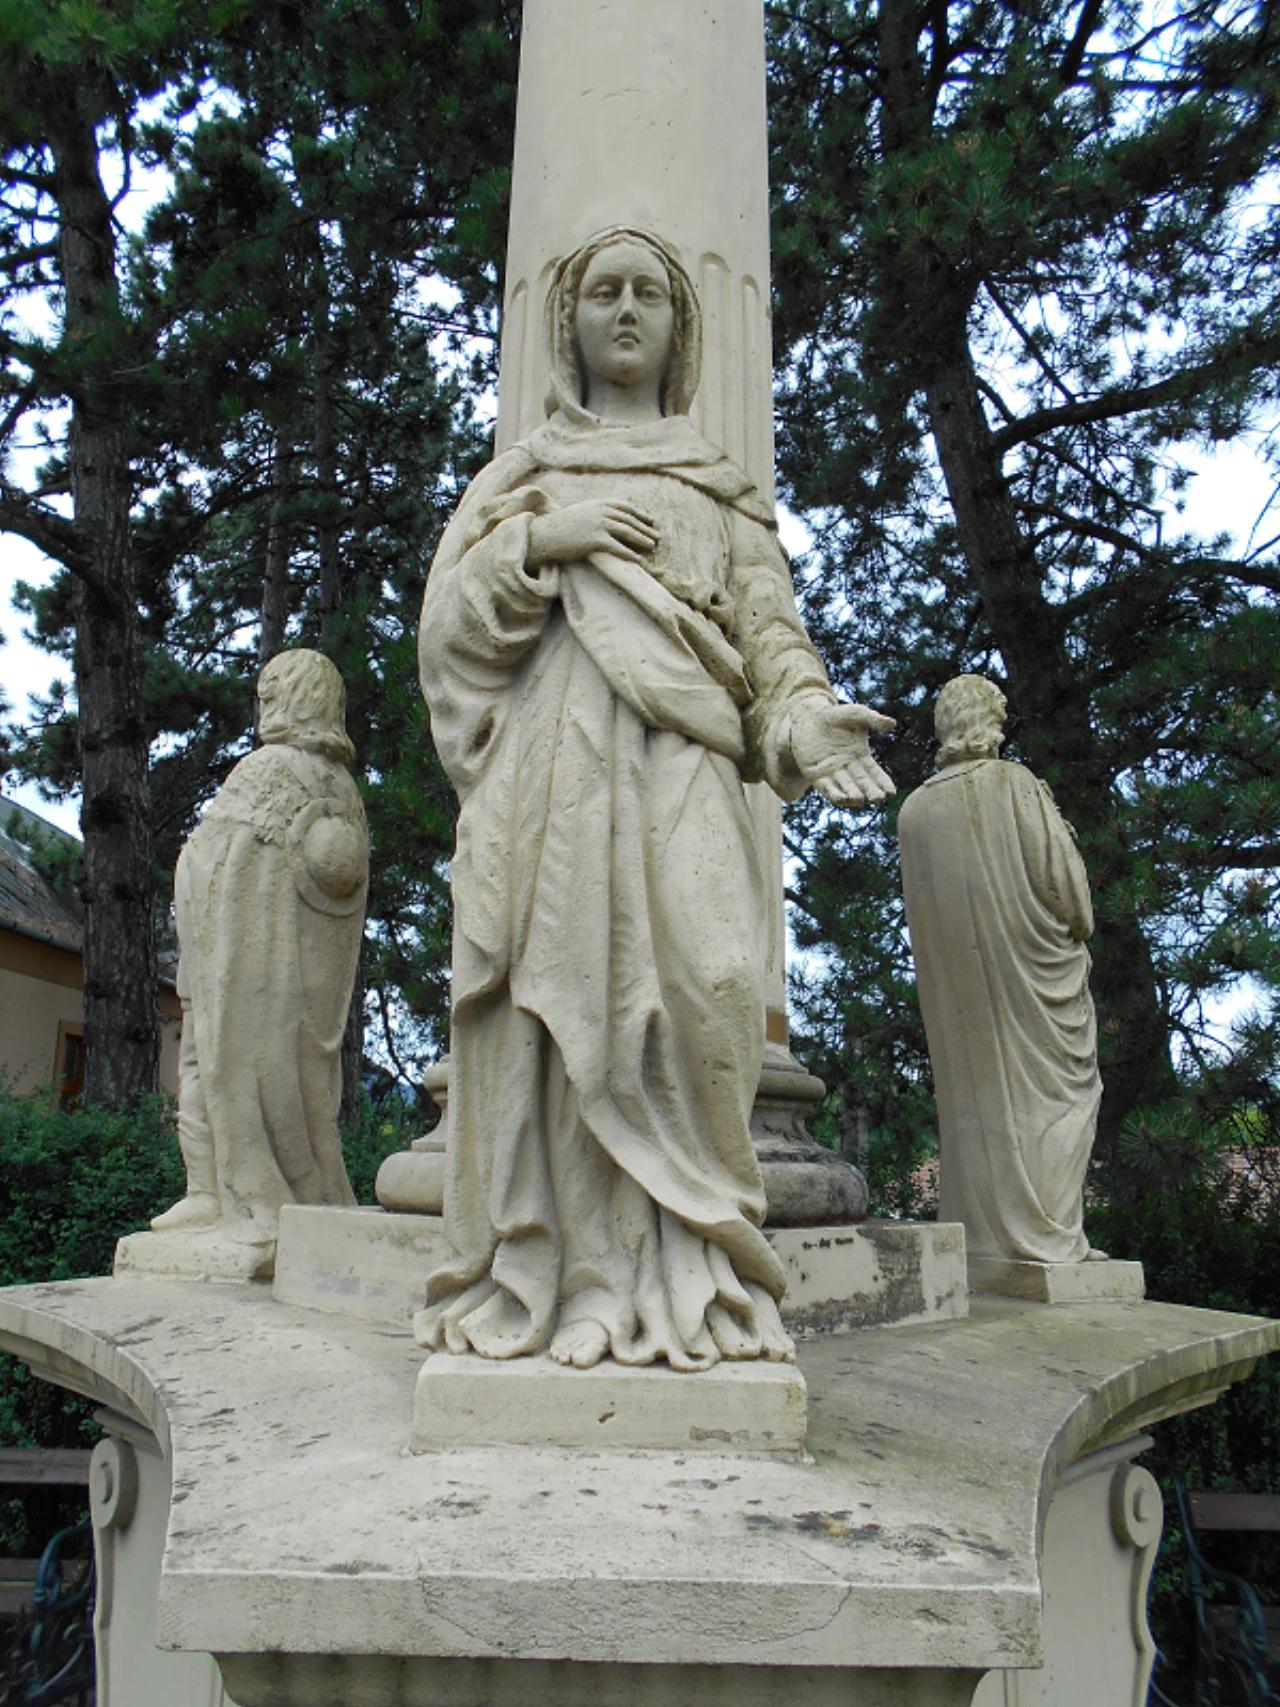 Szentháromság szobor nevü látnivaló 4. számú fényképe